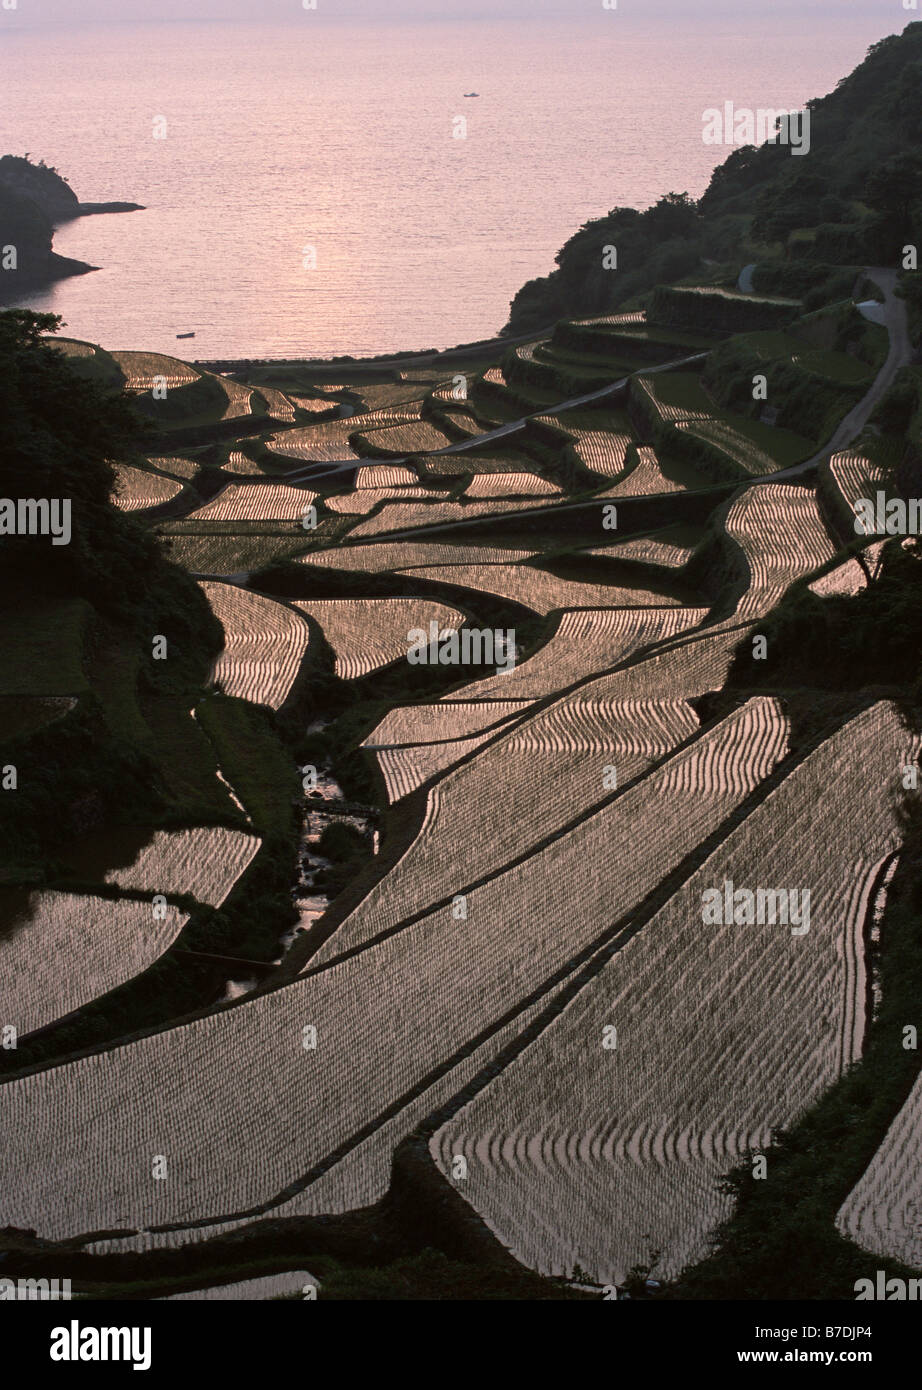 Terraced paddy fields Stock Photo - Alamy